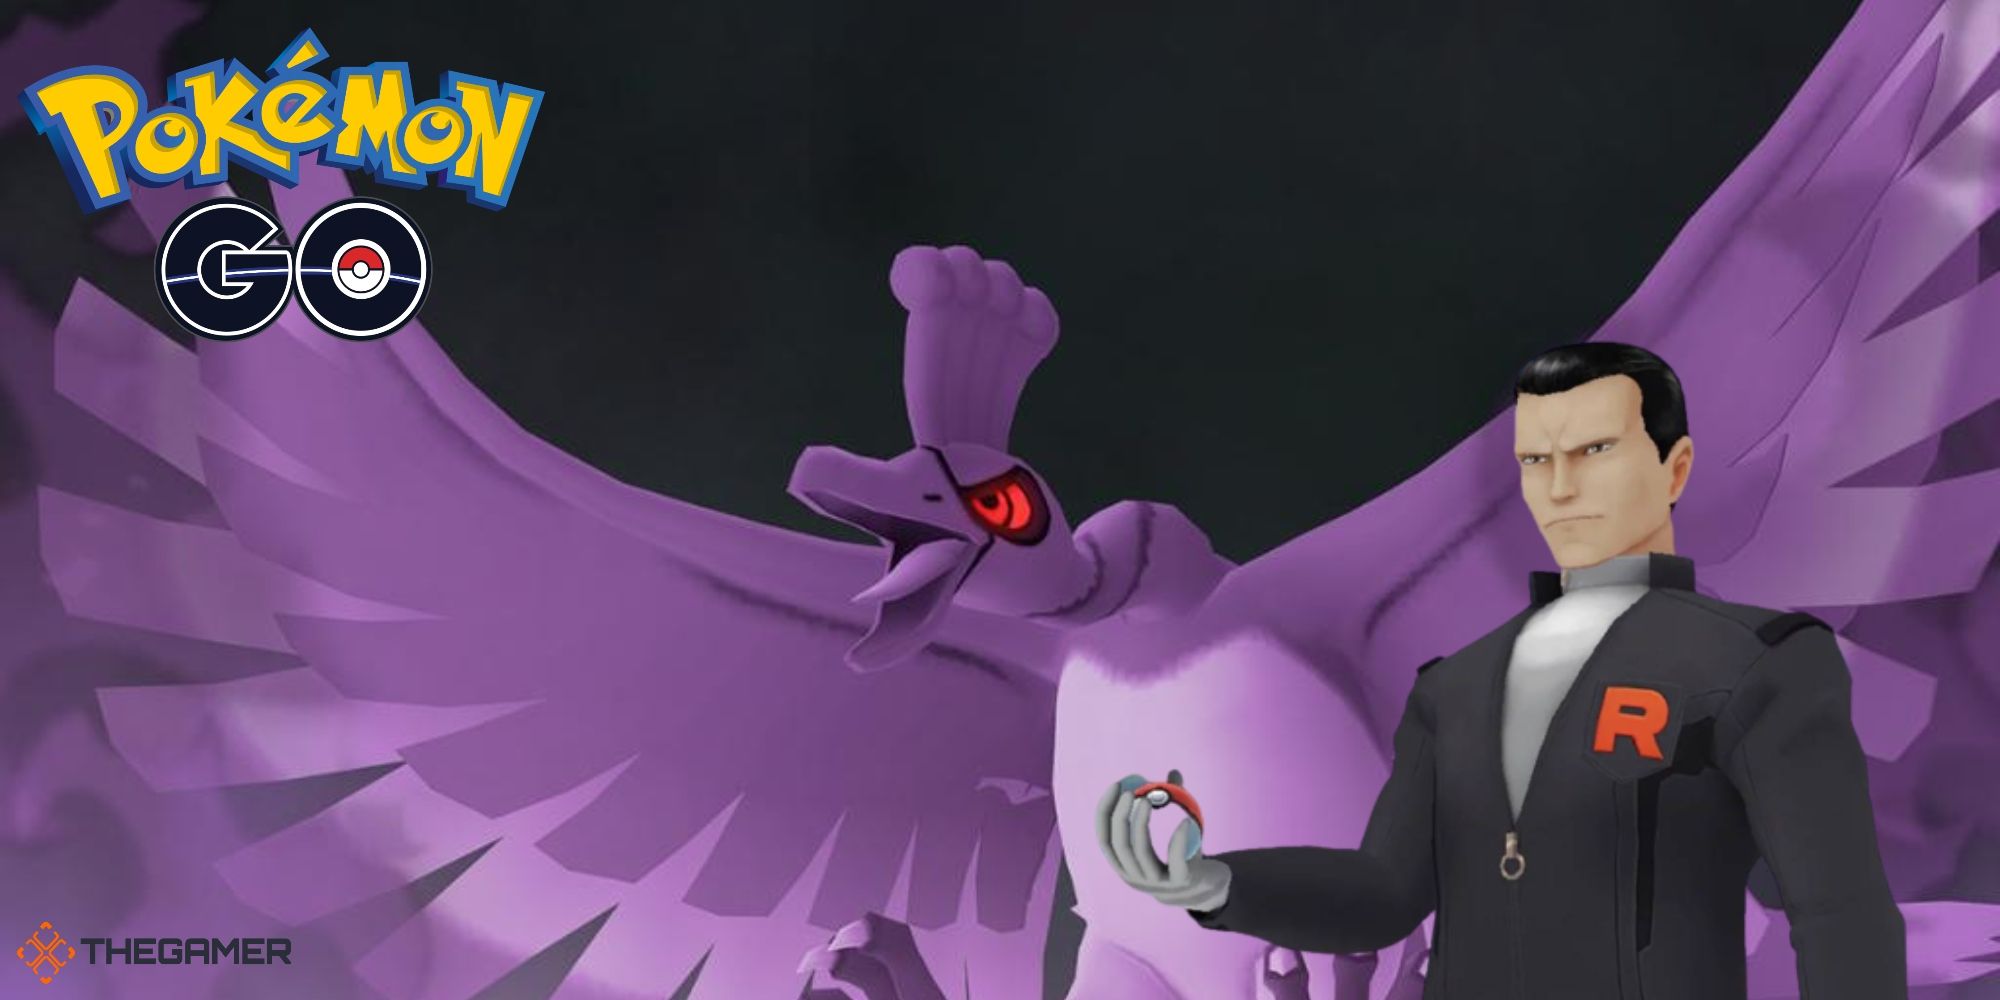 G47IX  Pokémon GO on X: Save Shadow Ho-Oh from Giovanni! #PokemonGo   / X